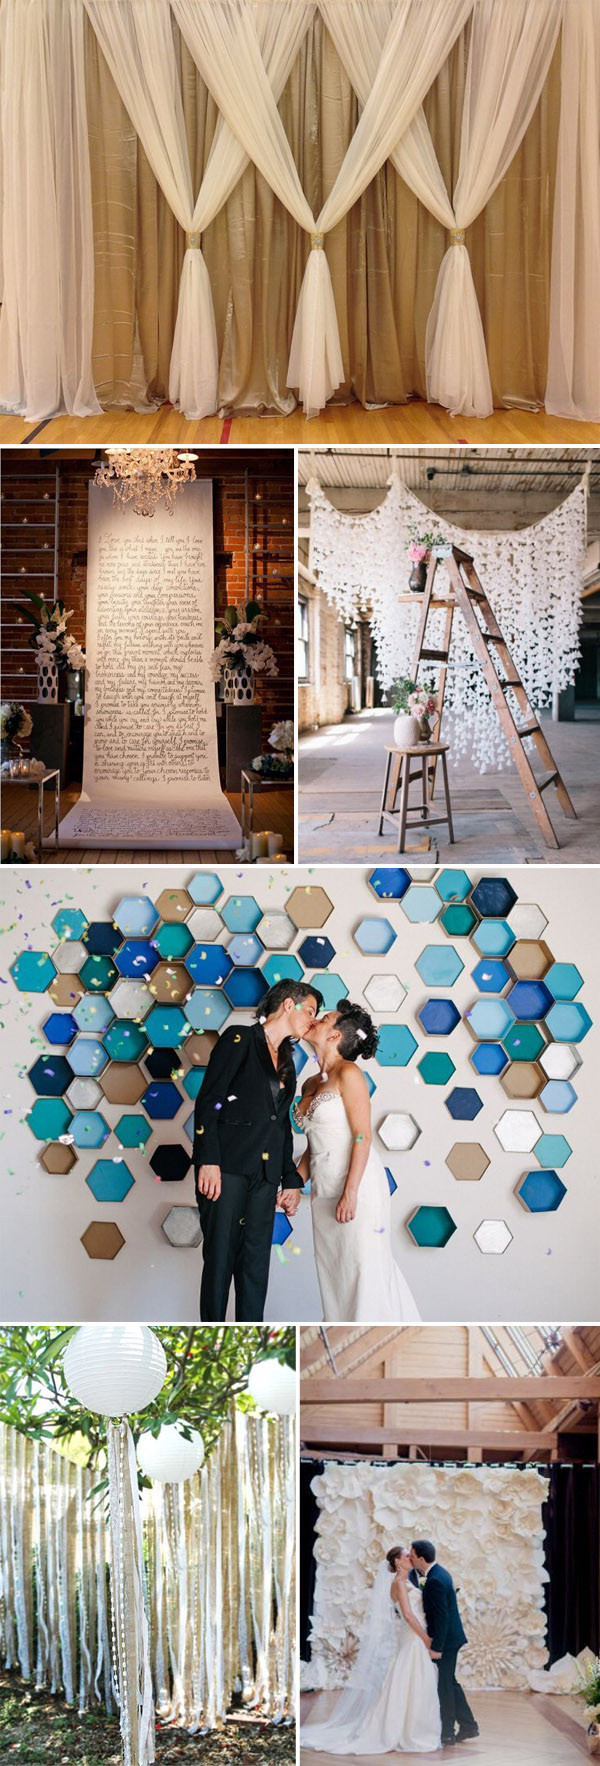 DIY Backdrops For Wedding
 Top 20 Unique Backdrops For Wedding Ceremony Ideas